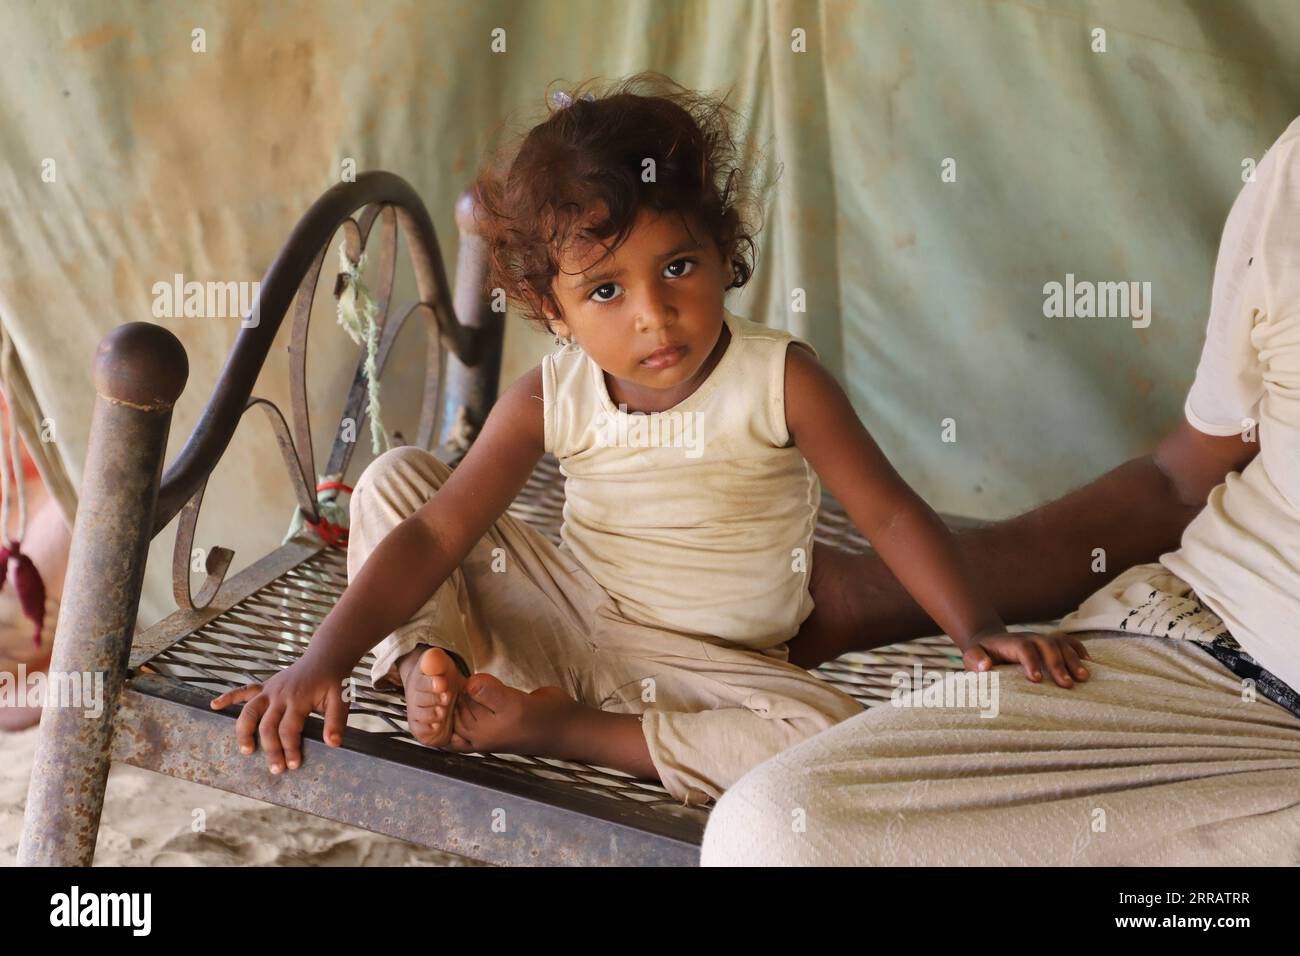 210817 -- HAJJAH, 17. August 2021 -- Ein Mädchen sitzt am 14. August 2021 auf einem Bett in einem abgelegenen Dorf im Bezirk Midi, Provinz Hajjah, Nordjemen. In den belagerten Bezirken der Provinz Hajjah im Nordjemen wurden laut den örtlichen Gesundheitsbehörden seit mehr als drei Jahren etwa 11.350 Kinder nicht gegen vermeidbare Krankheiten geimpft. ZU GEHEN MIT Feature: Über 11.000 Kinder in der belagerten jemenitischen Provinz Hajjah verlassen ungeimpft für 3 Jahre Foto von /Xinhua JEMEN-HAJJAH-KINDER-IMPFSTOFF MANGEL MohammedxAl-Wafi PUBLICATIONxNOTxINxCHN Stockfoto